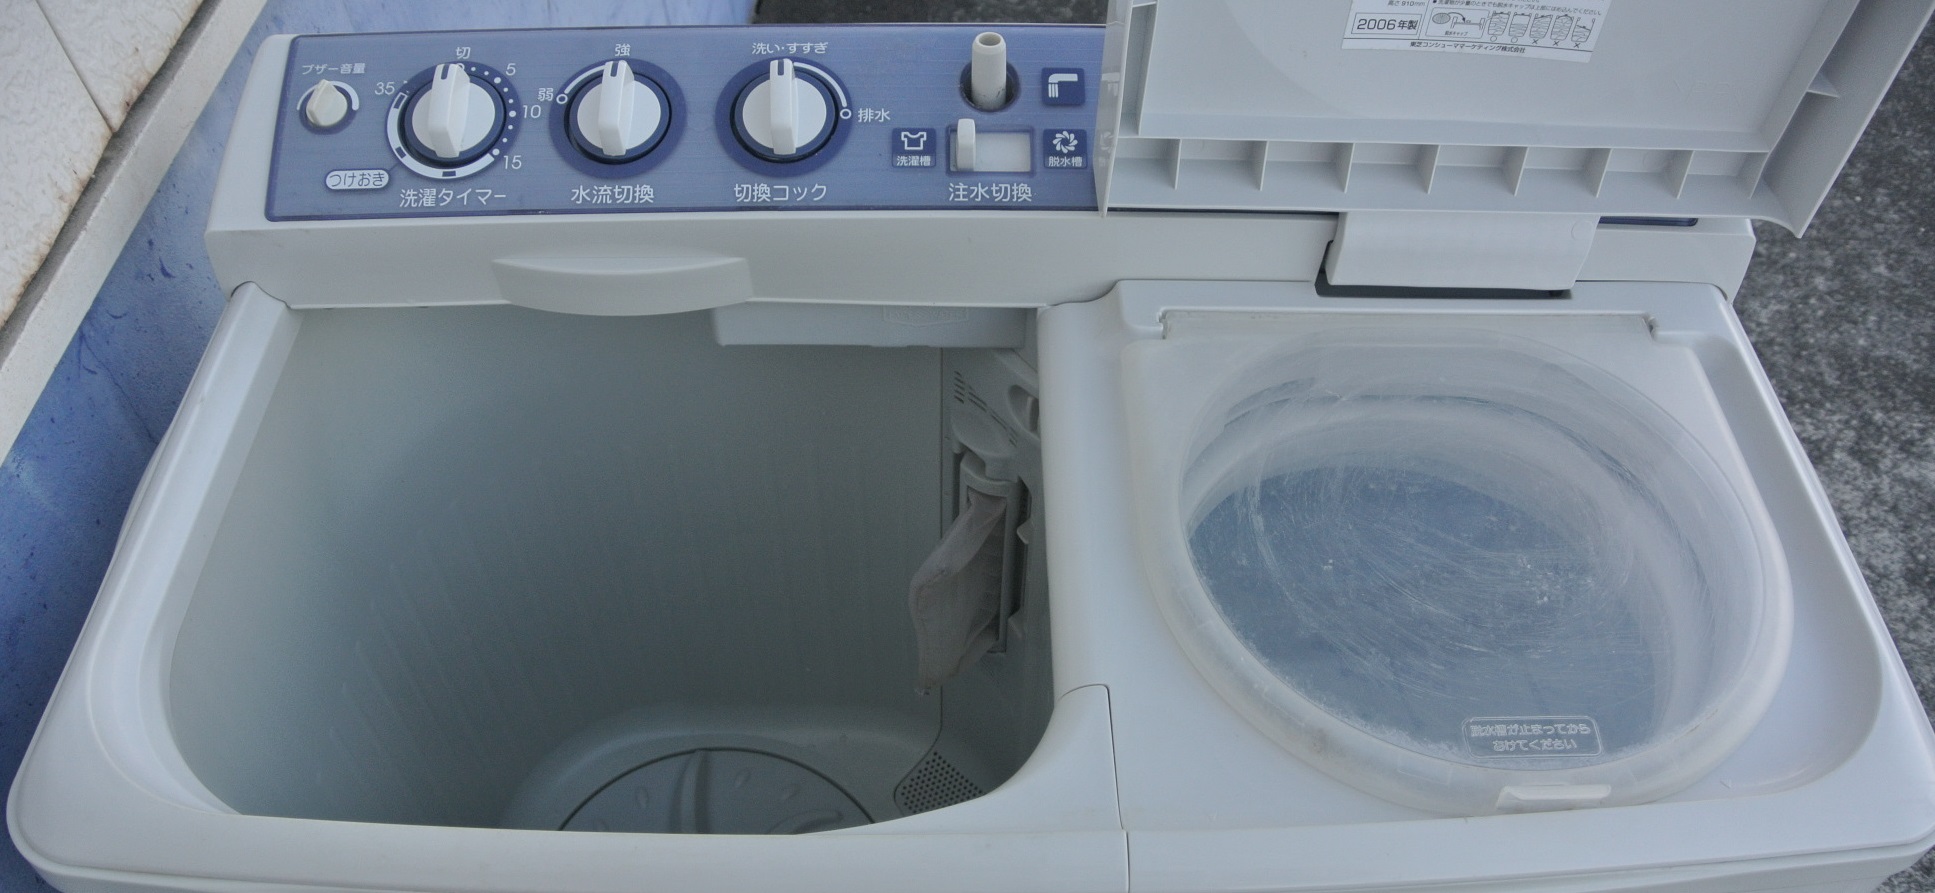 TOSHIBA二槽式洗濯機⑲ - 生活家電